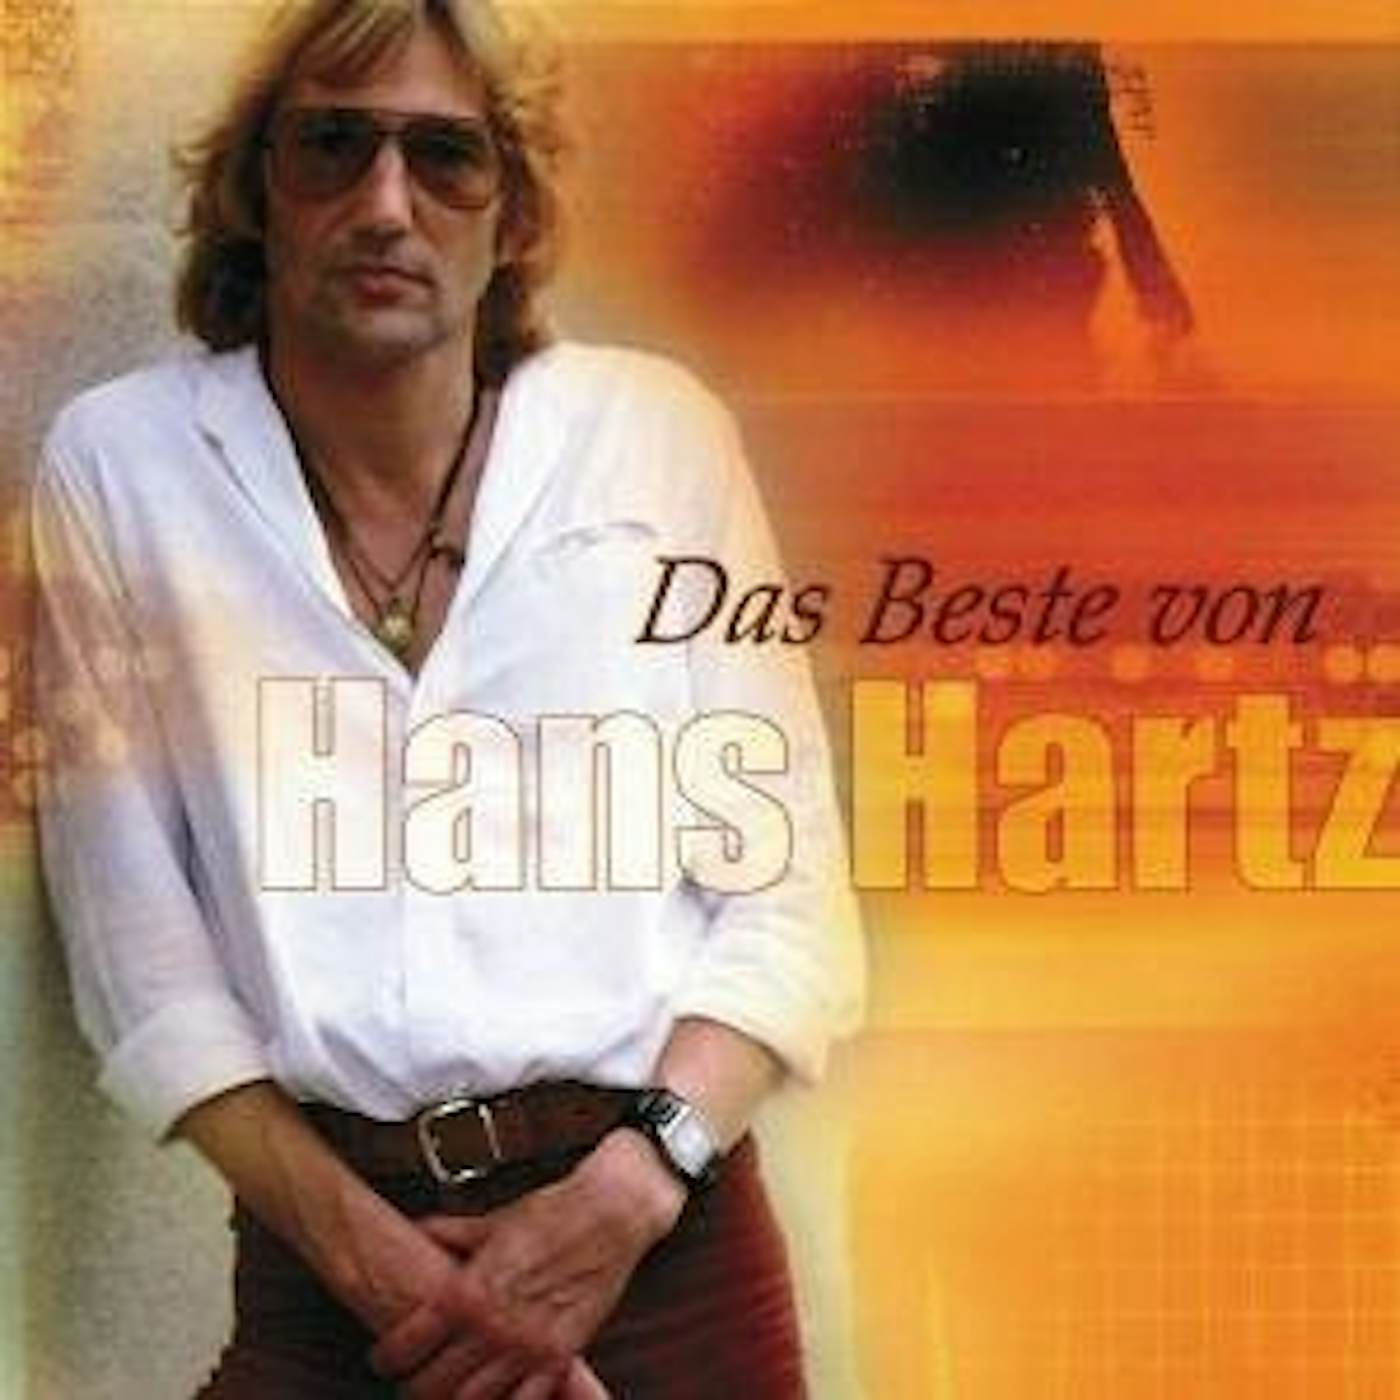 Hans Hartz DAS BESTE VON CD